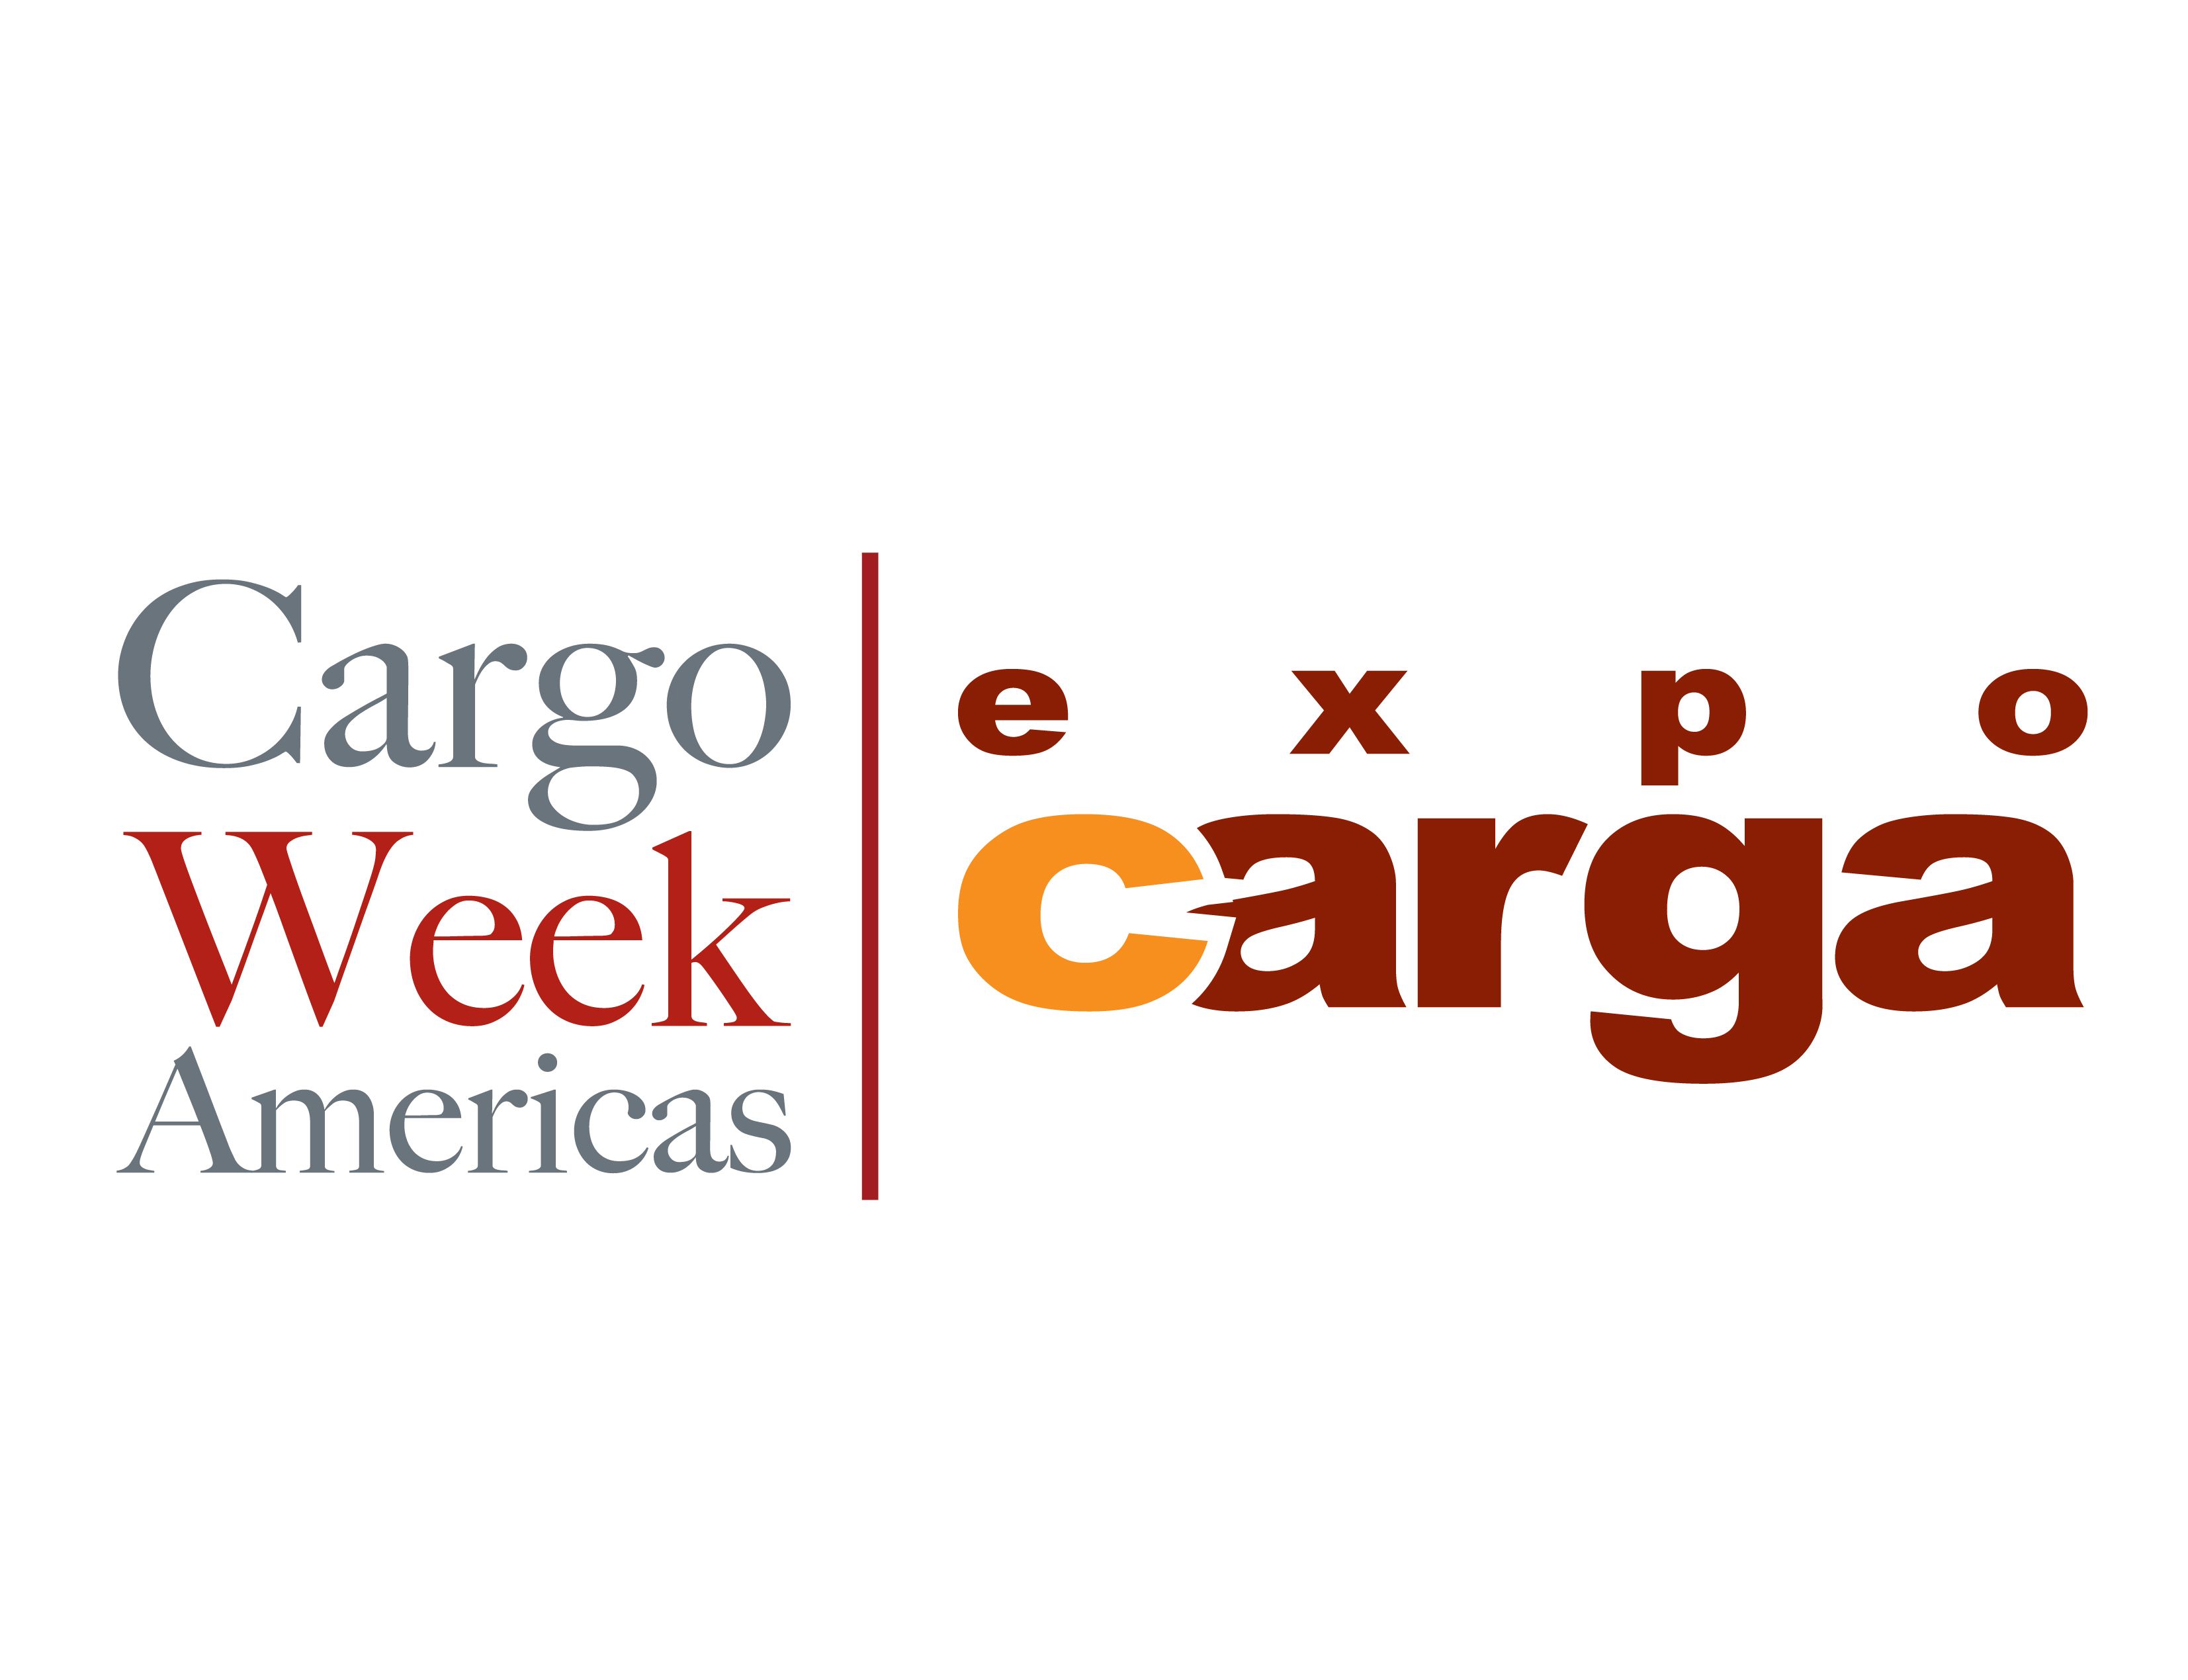 Cargo Week Americas - Expo Carga 2015